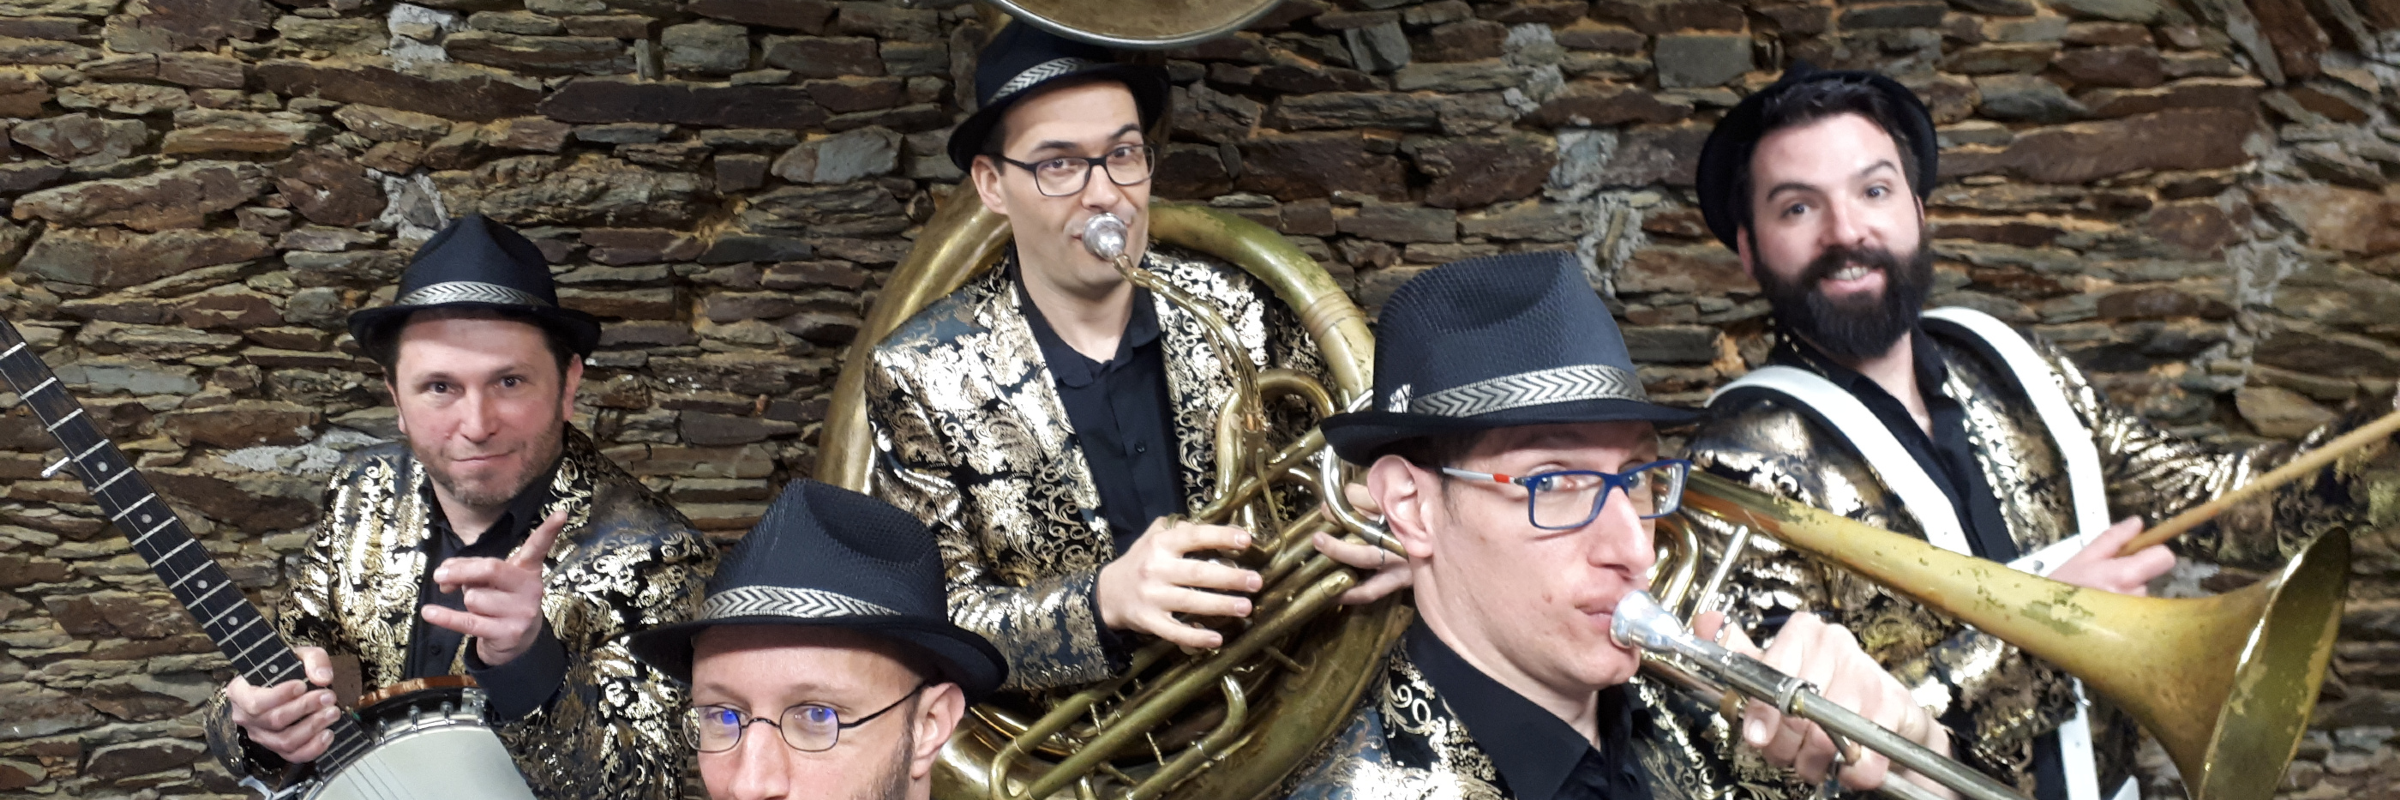 Smile Quintet, groupe de musique Fanfare en représentation à Maine et Loire - photo de couverture n° 1